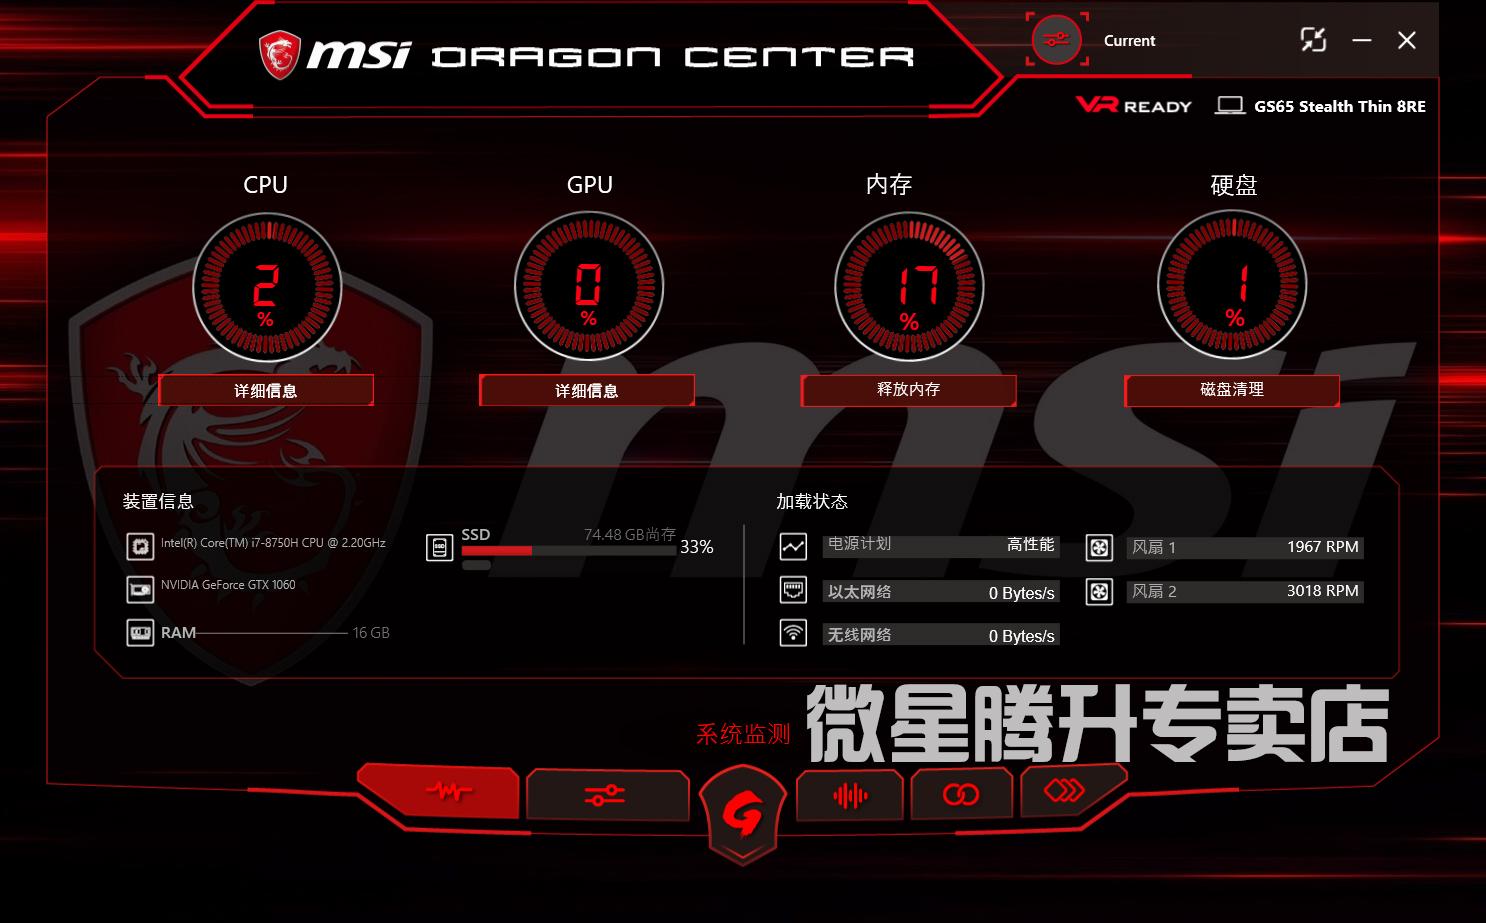 dragon center 2.0 update